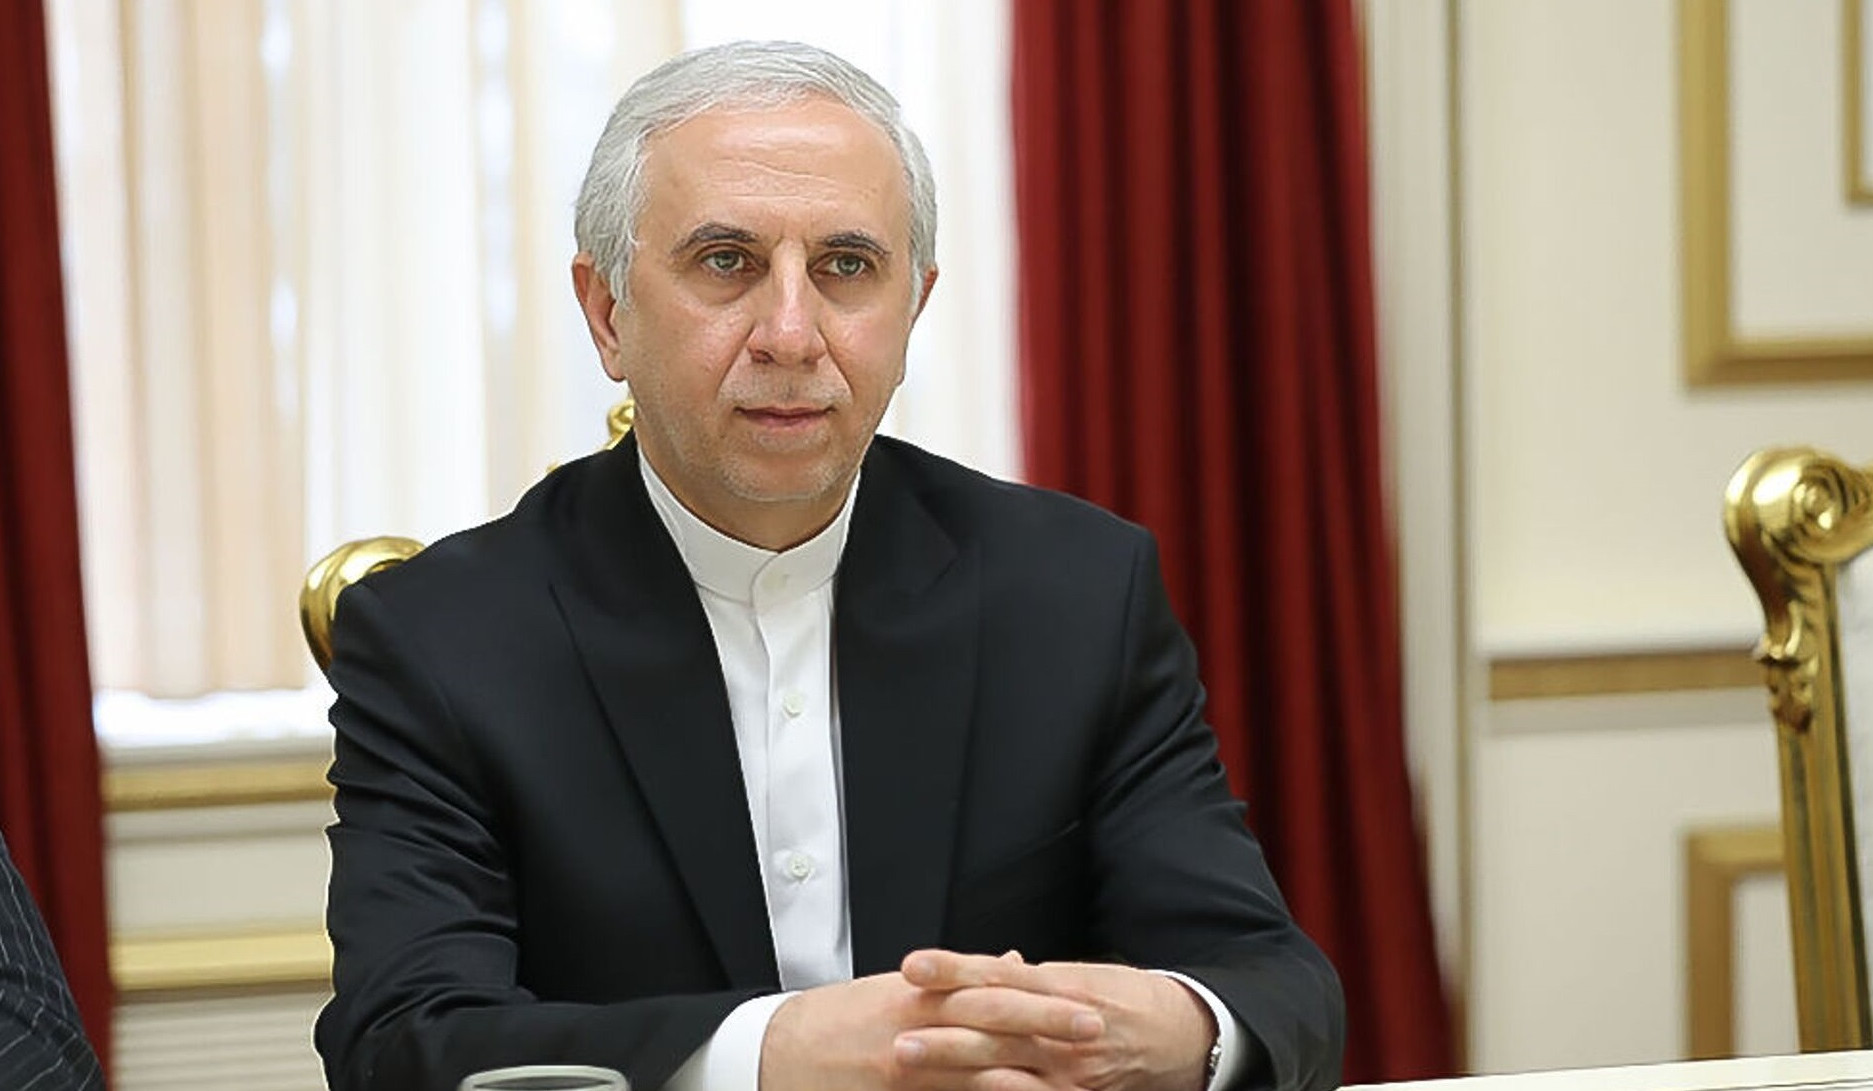 Власти Армении и Ирана намерены увеличить двусторонний товарооборот до 1 миллиарда долларов: посол Ирана в Армении